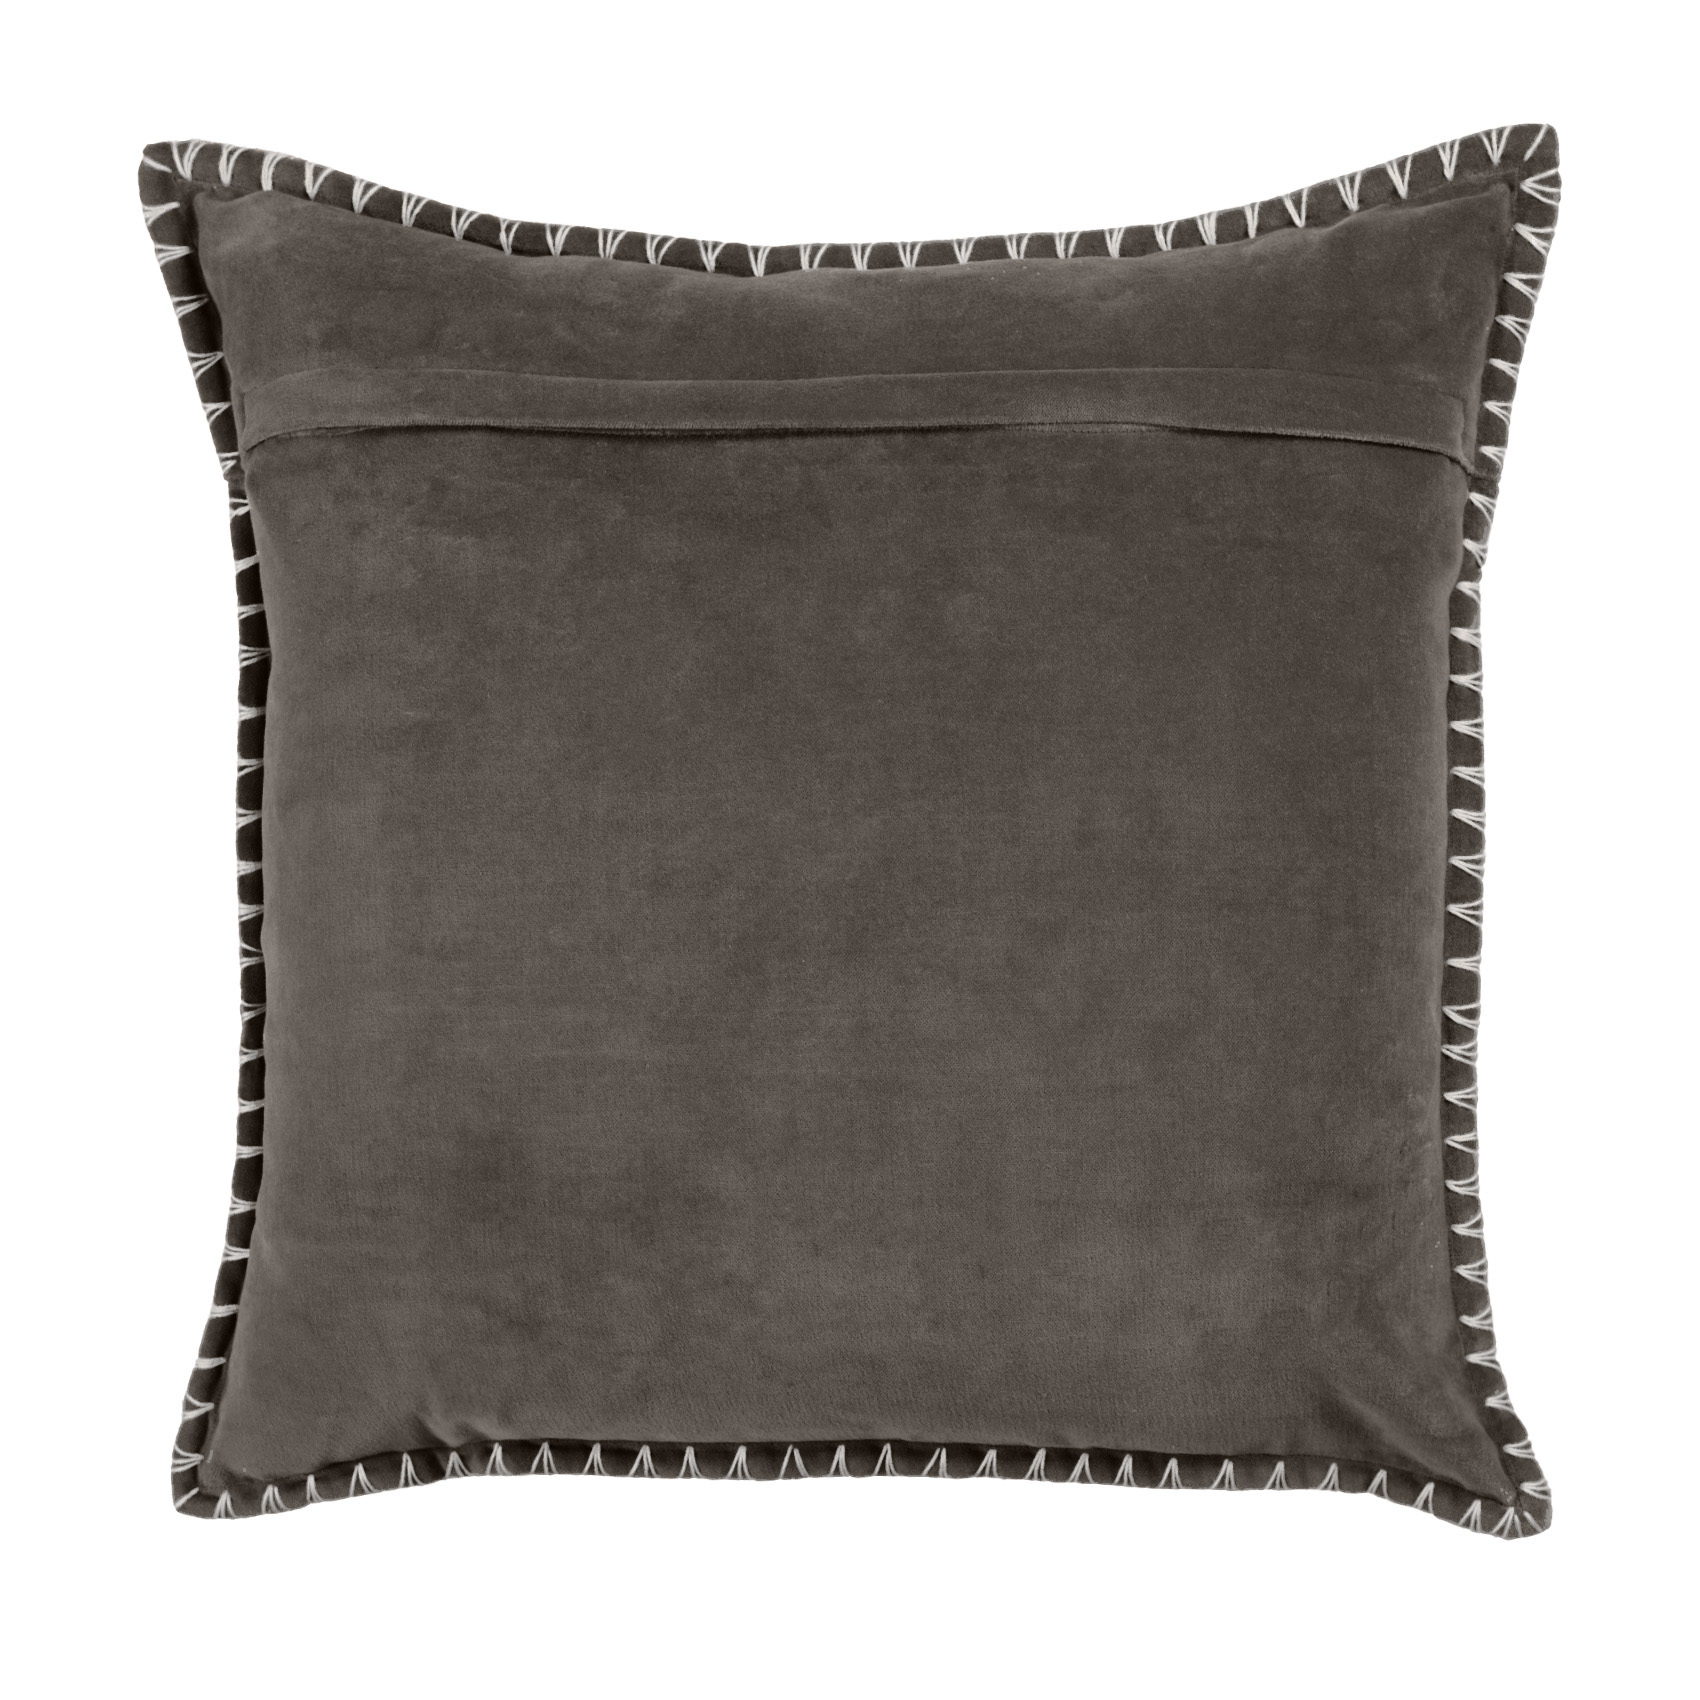 Stitch Iron Cushion